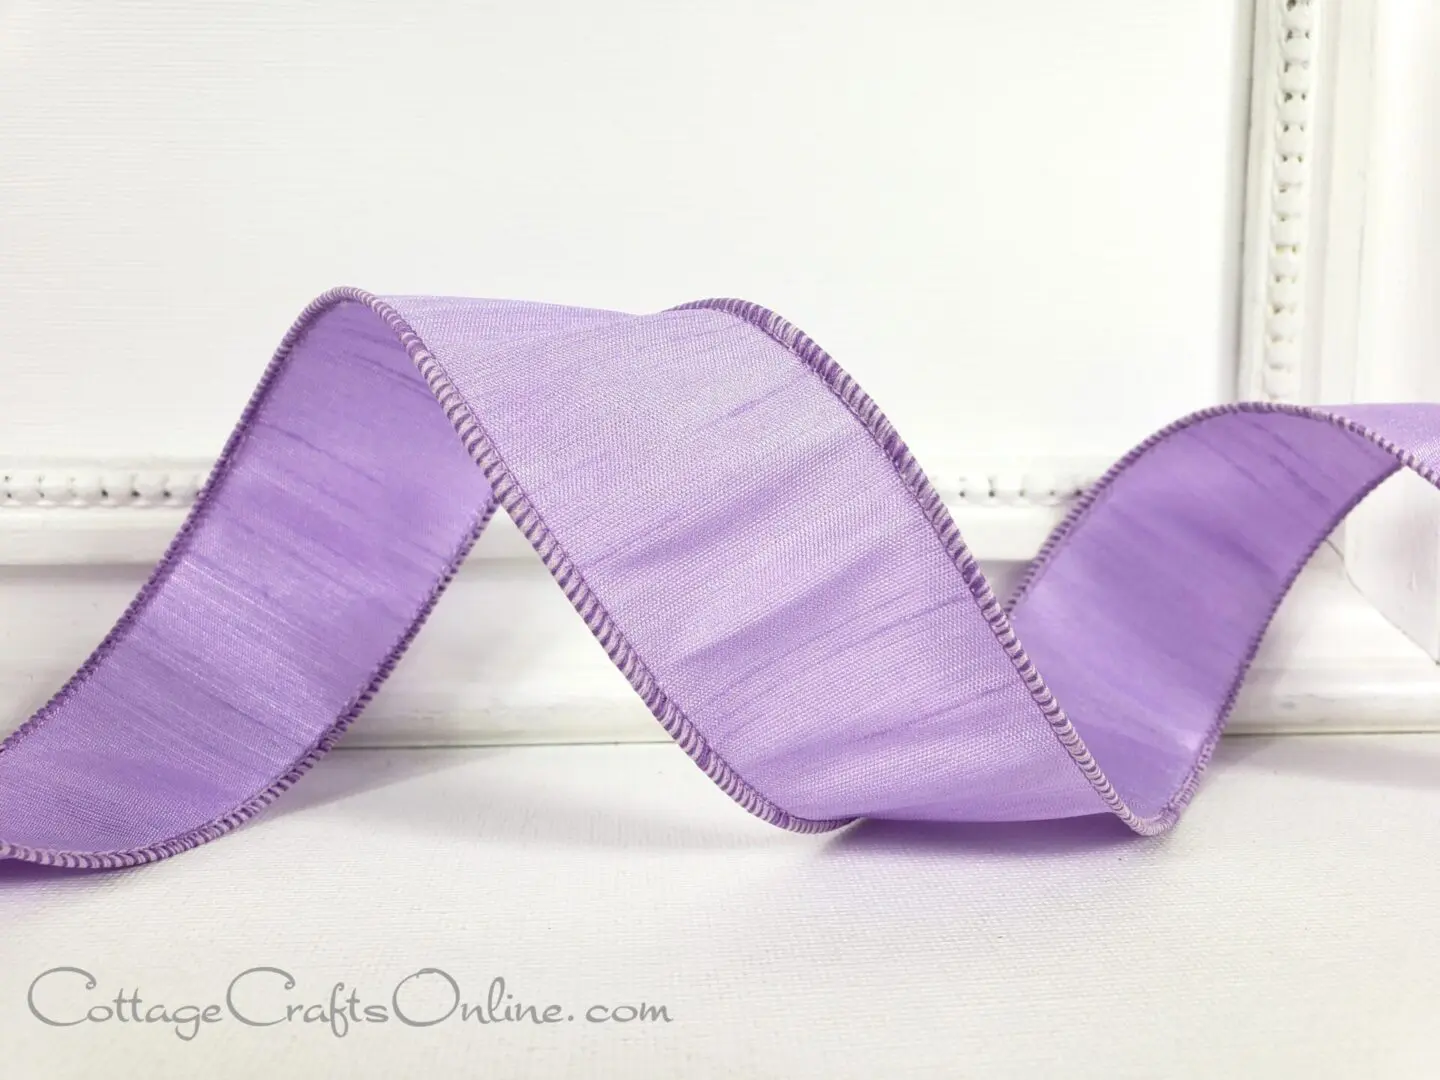 a purple satin ribbon on a white frame.